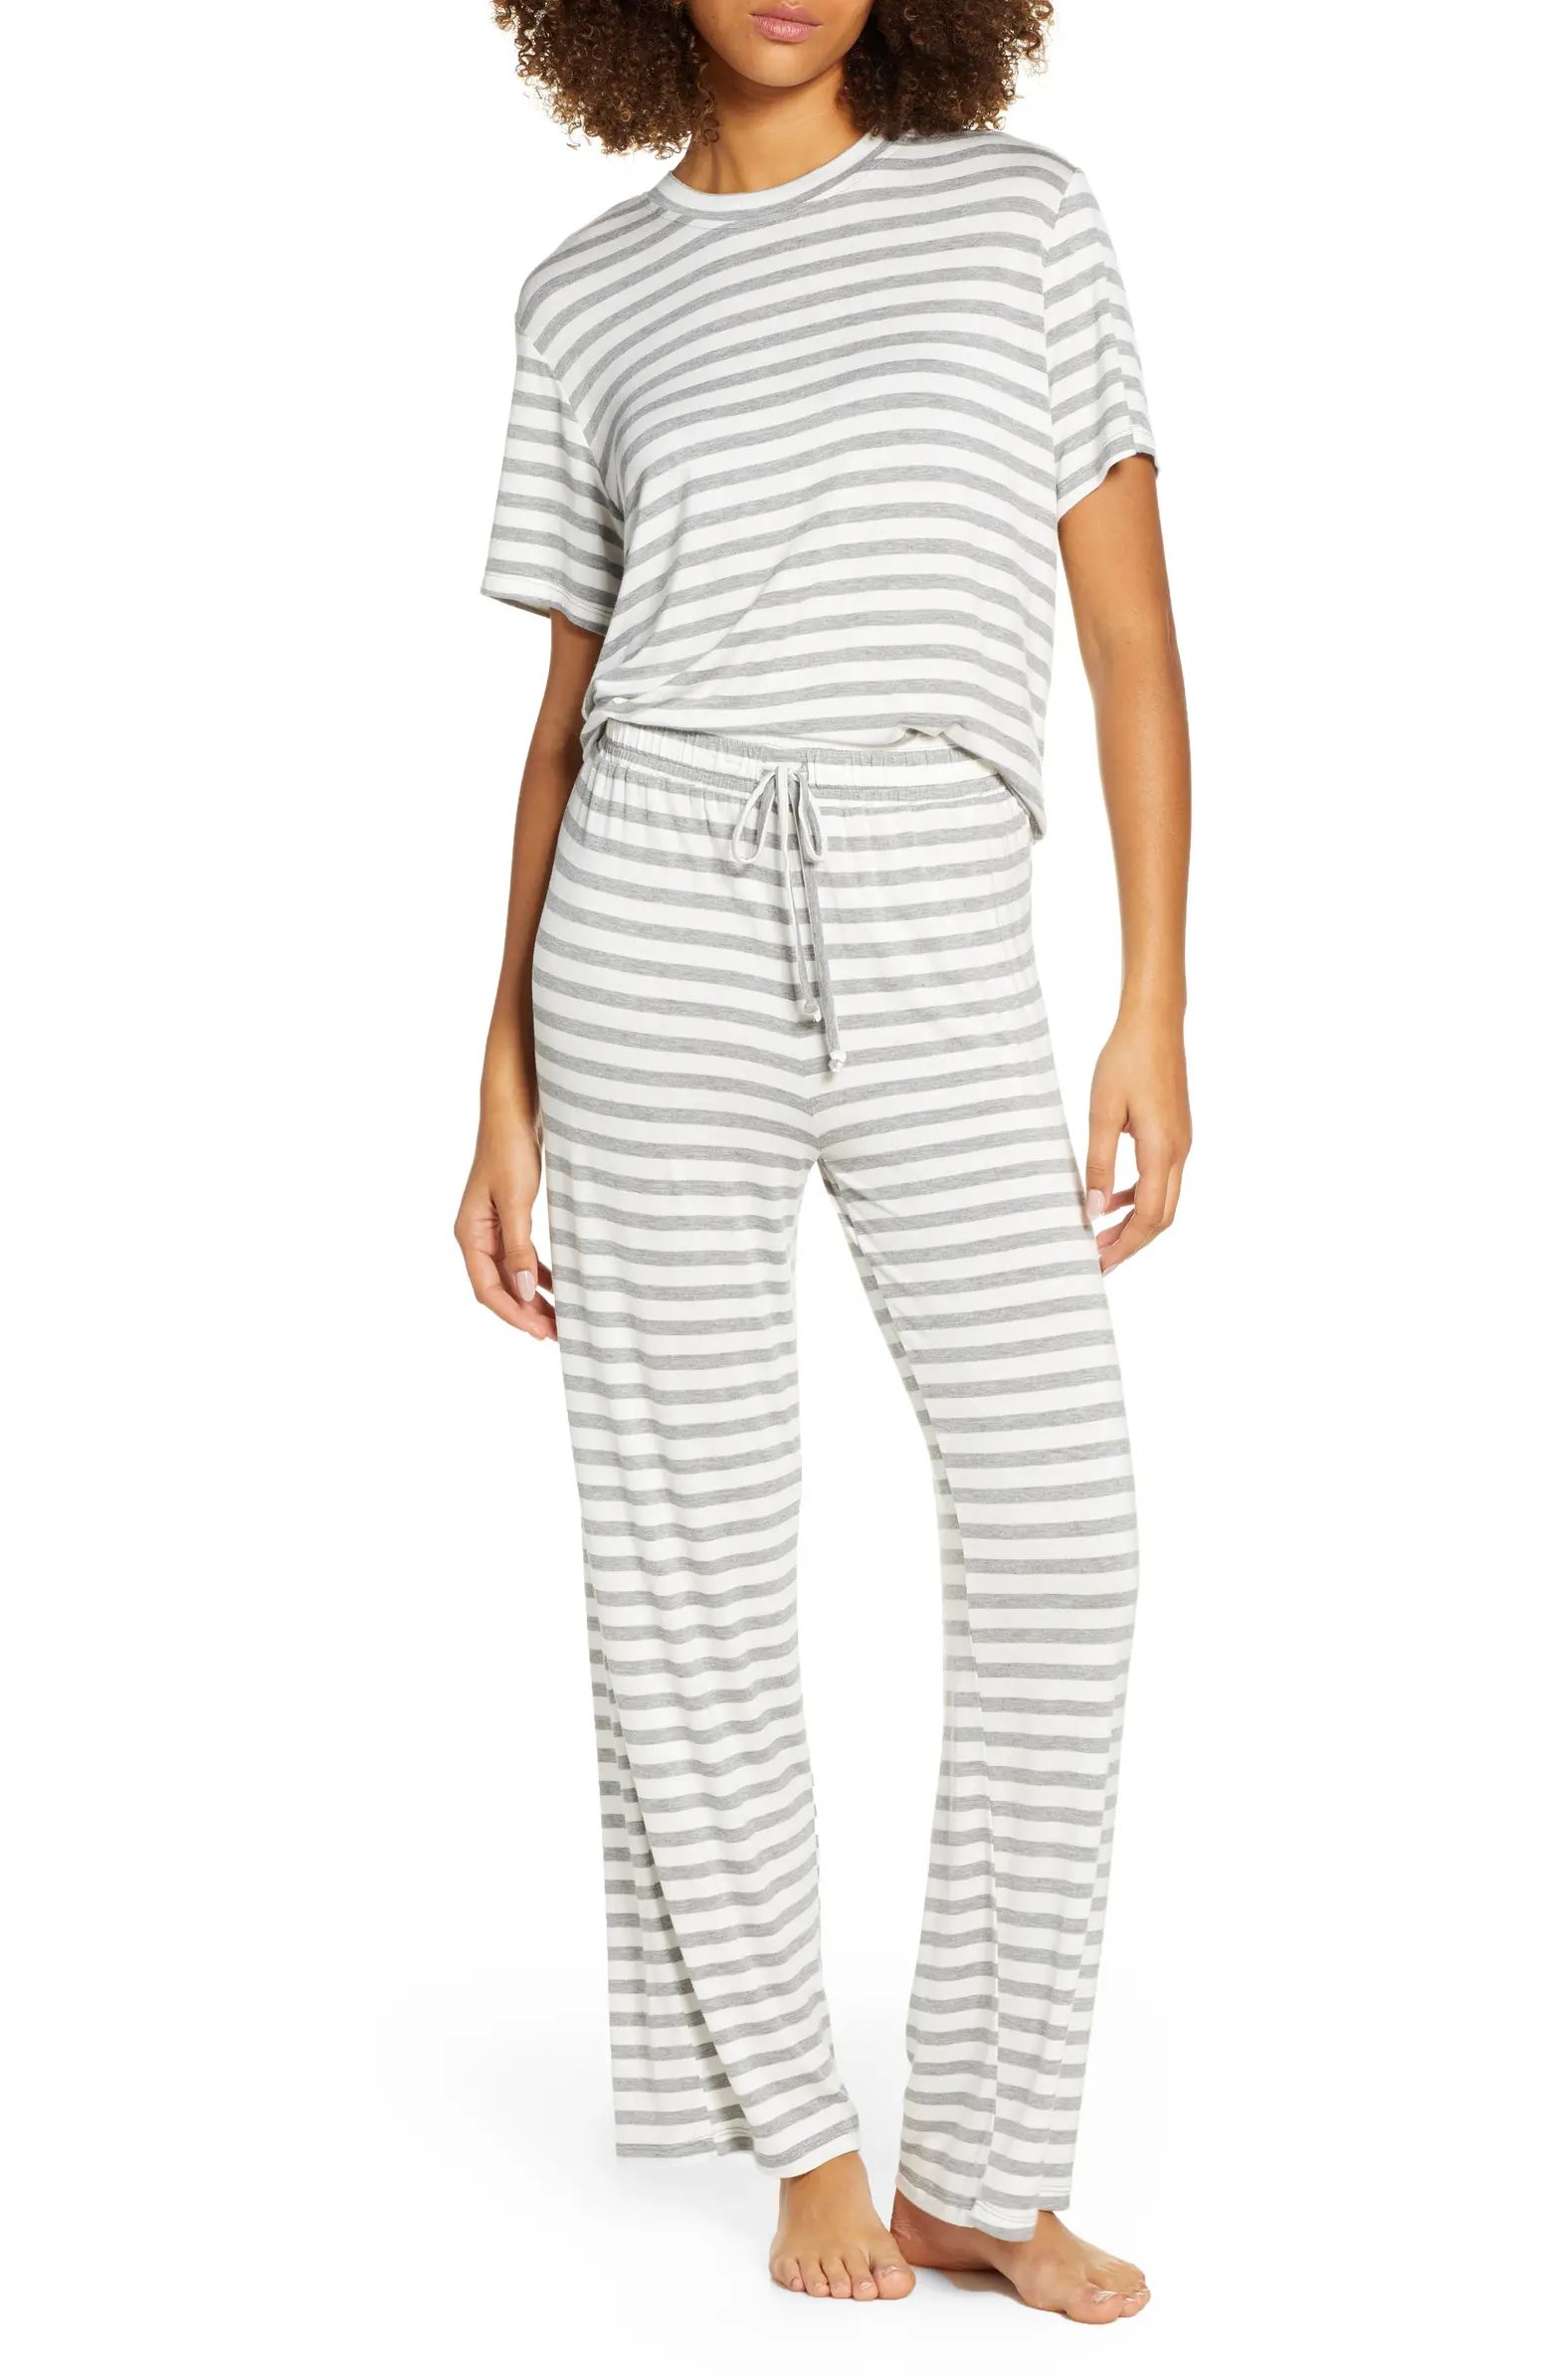 All American Pajamas | Nordstrom Canada